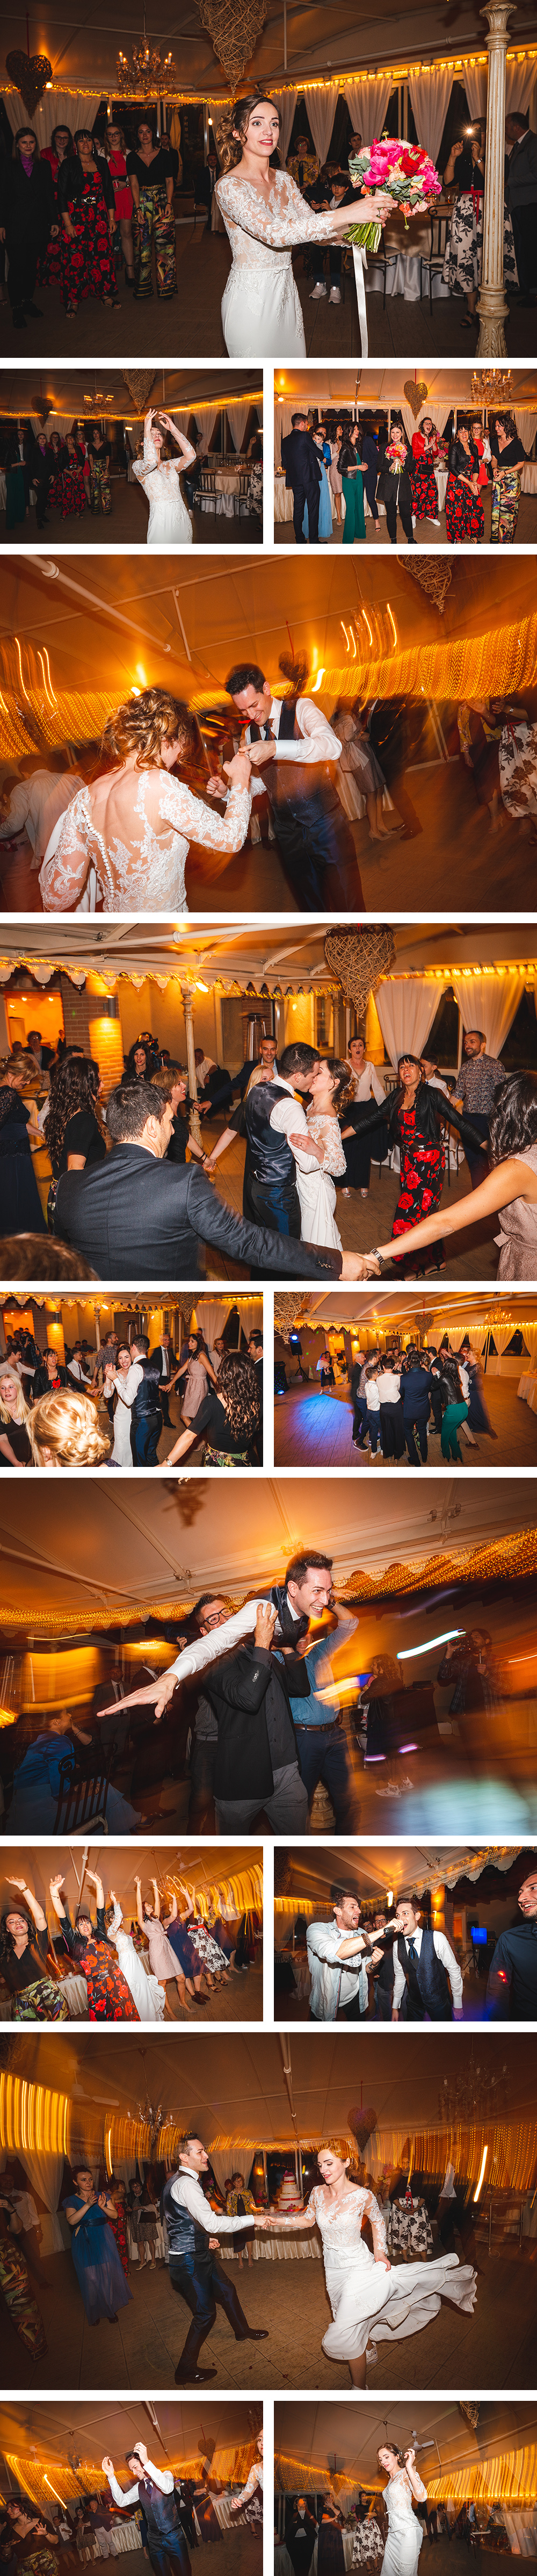 Gli sposi e gli amici ballano